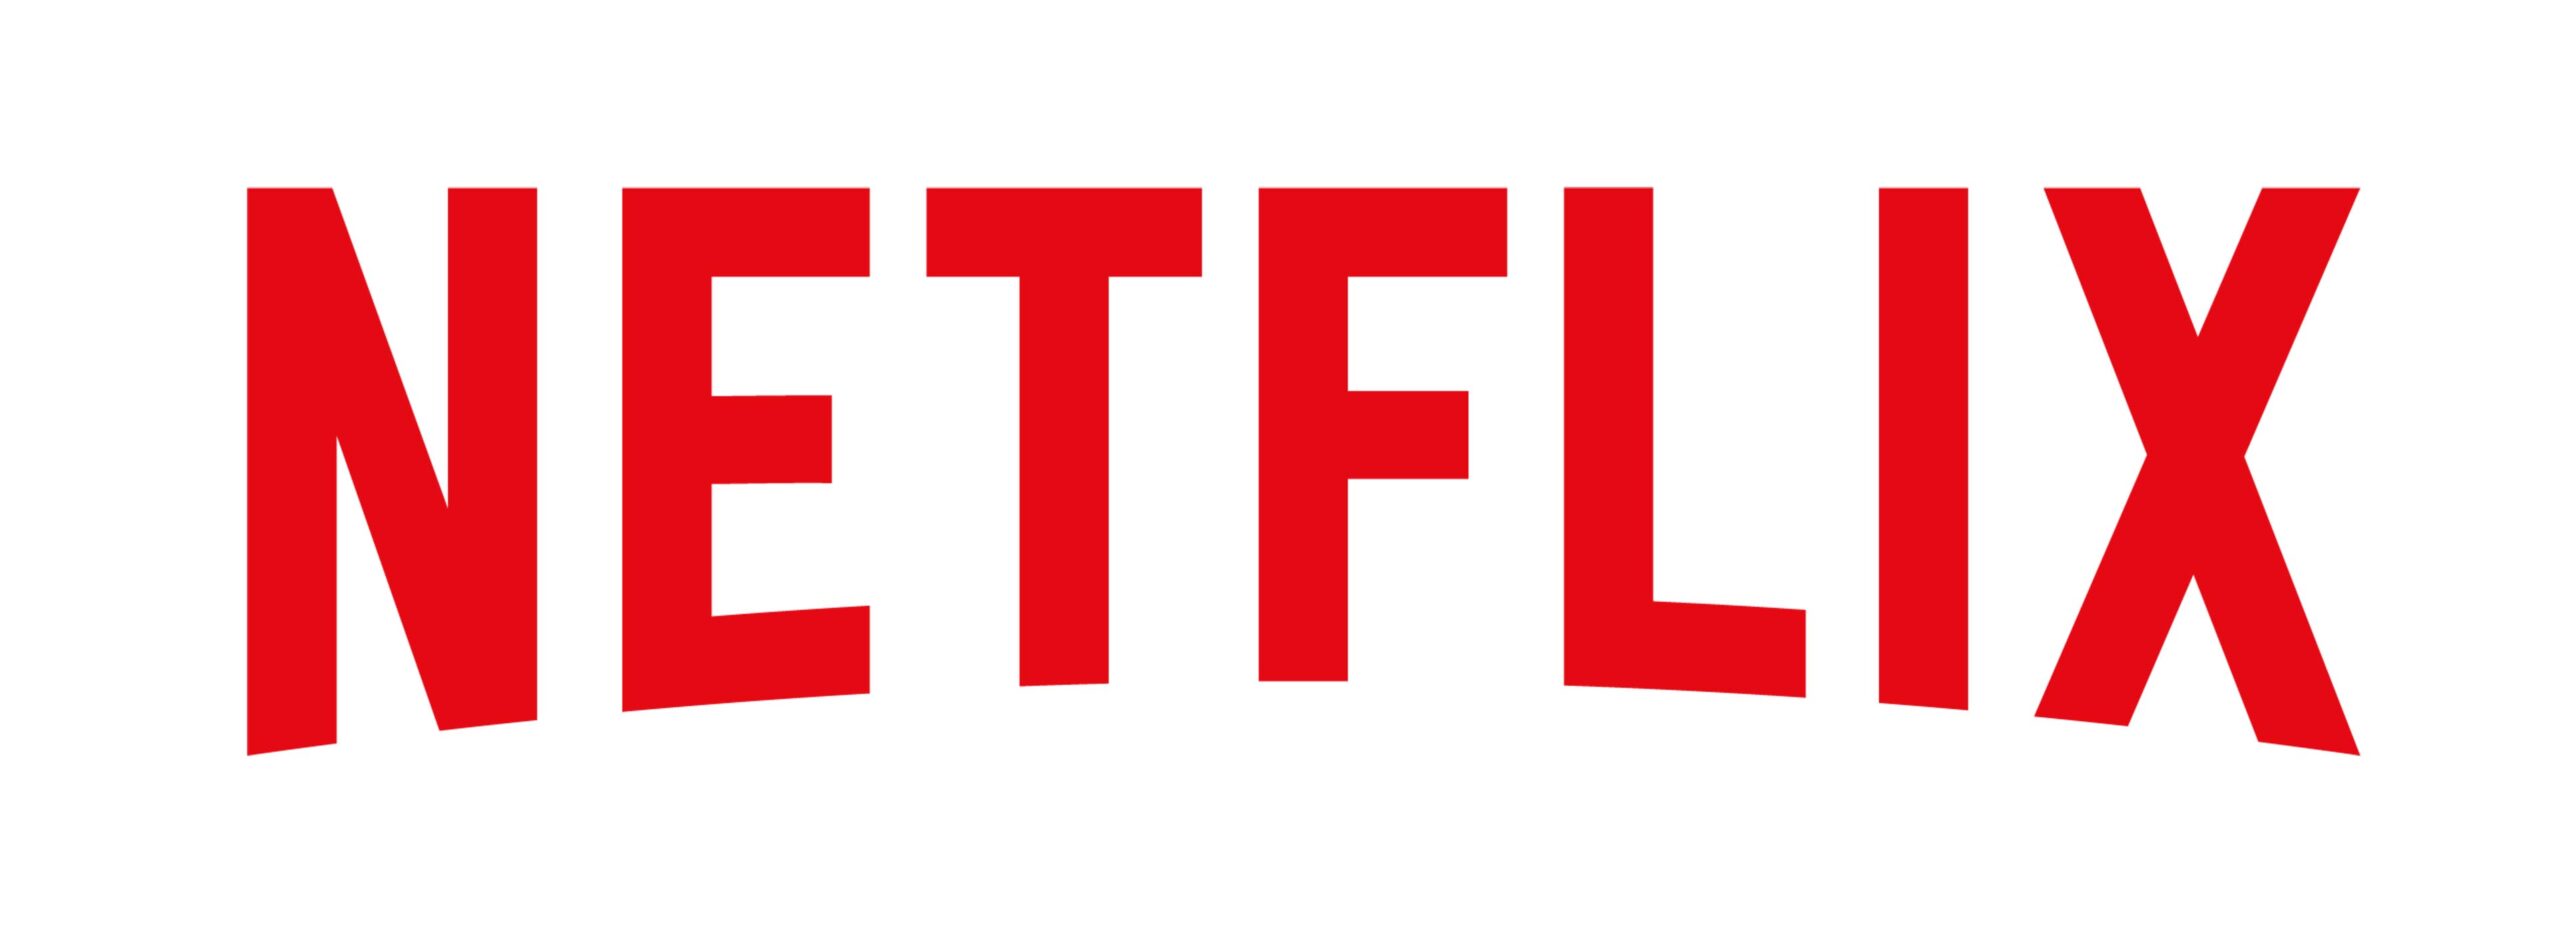 Netflix 2020/21. La plataforma nos ha presentado sus novedades